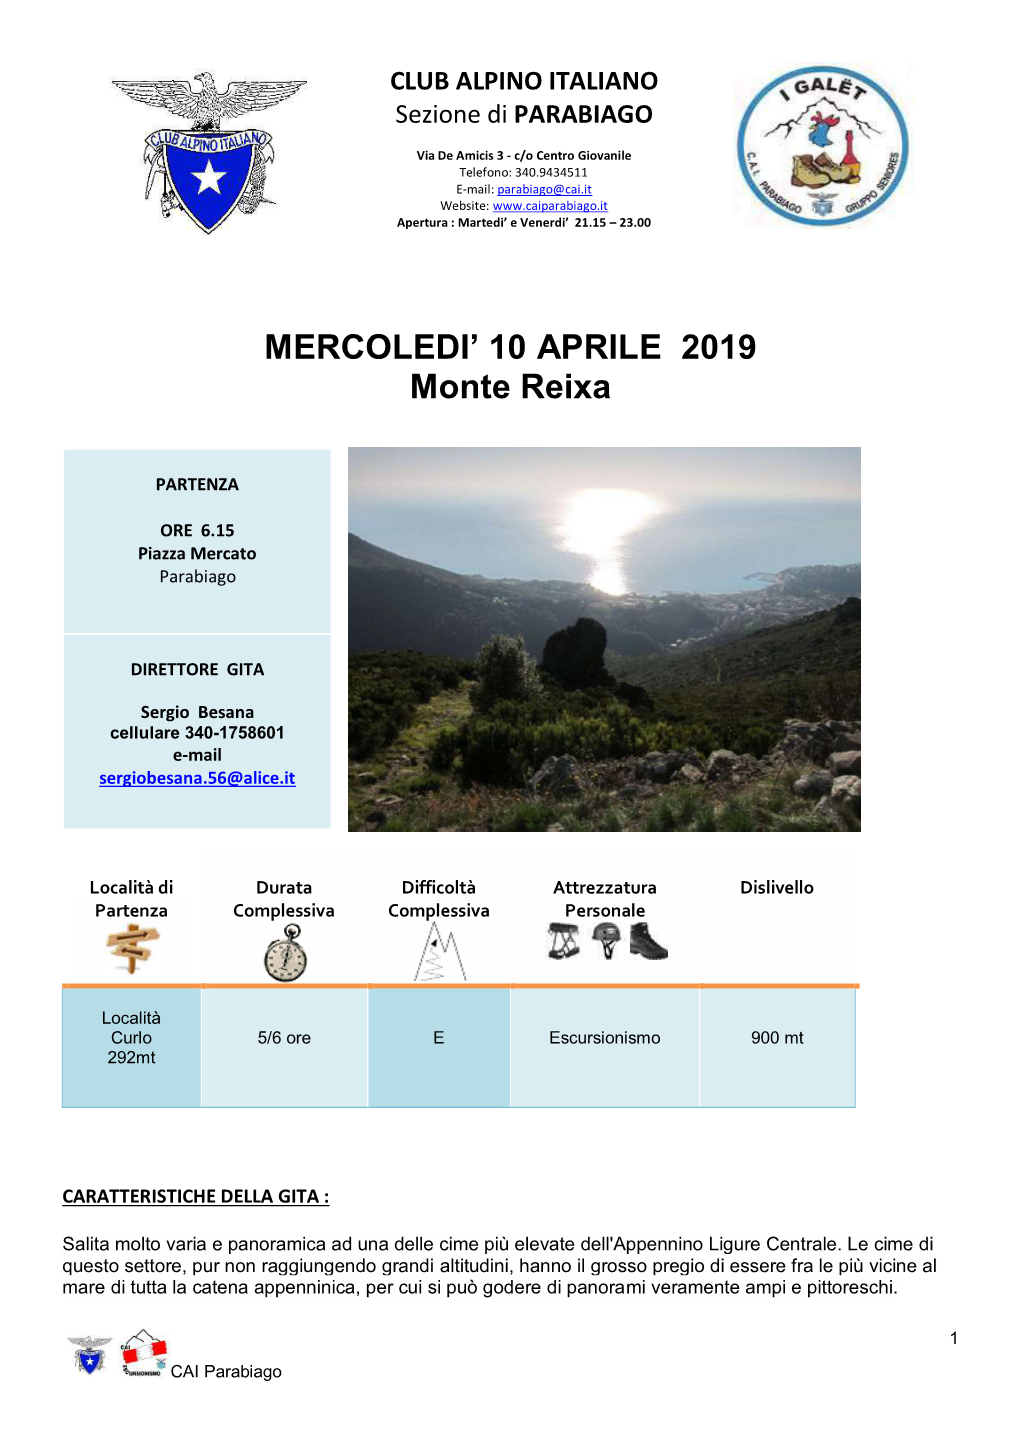 MERCOLEDI' 10 APRILE 2019 Monte Reixa